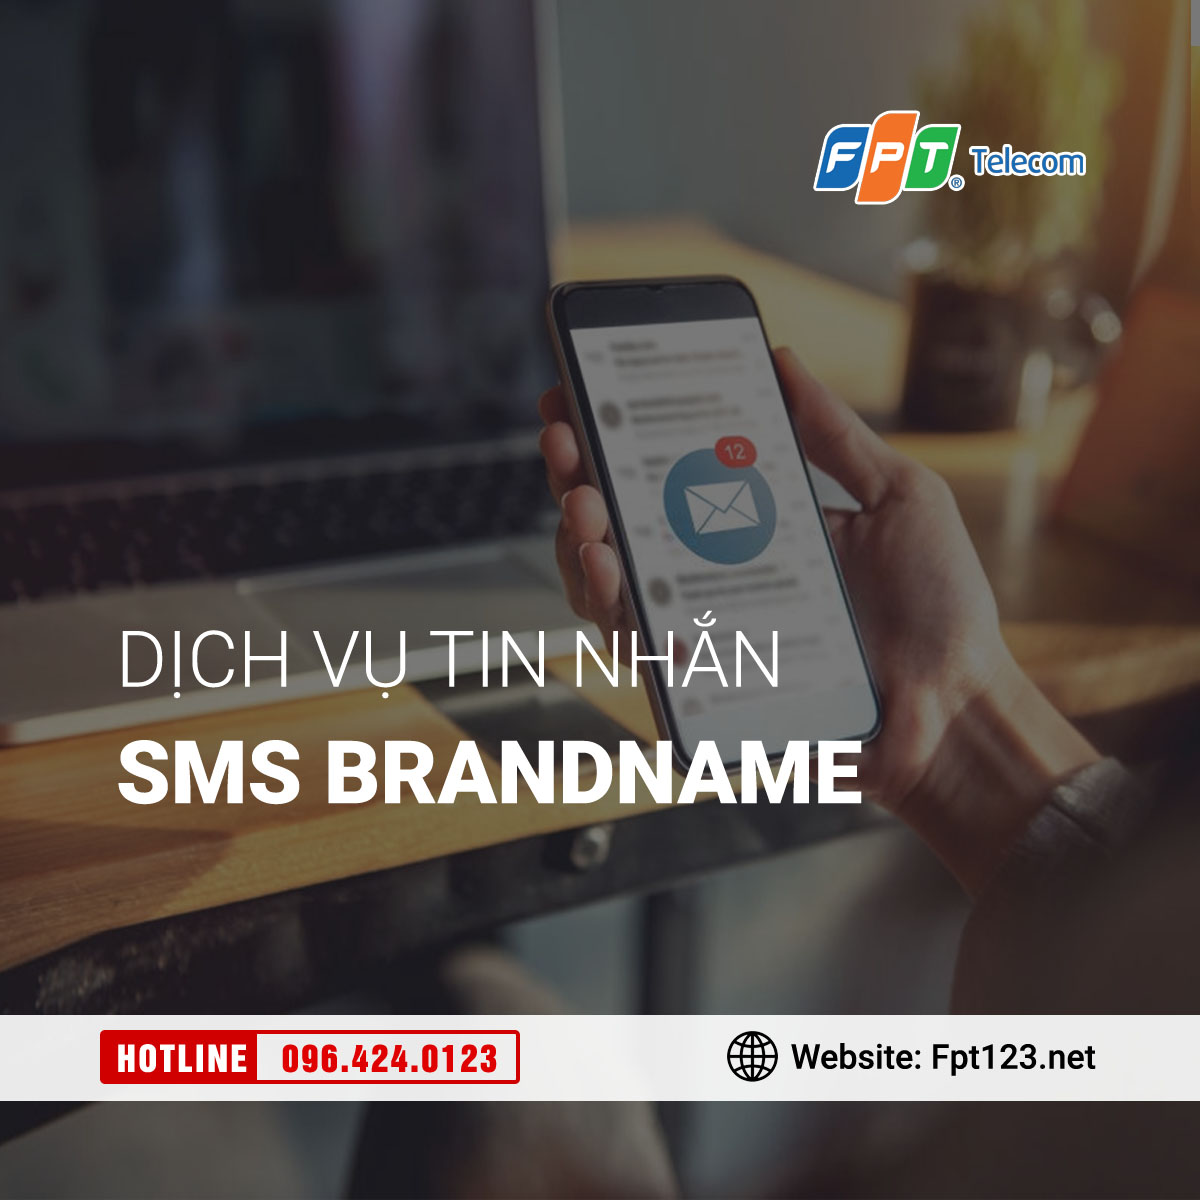 Dịch vụ tin nhắn thương hiệu SMS Brandname của FPT Telecom